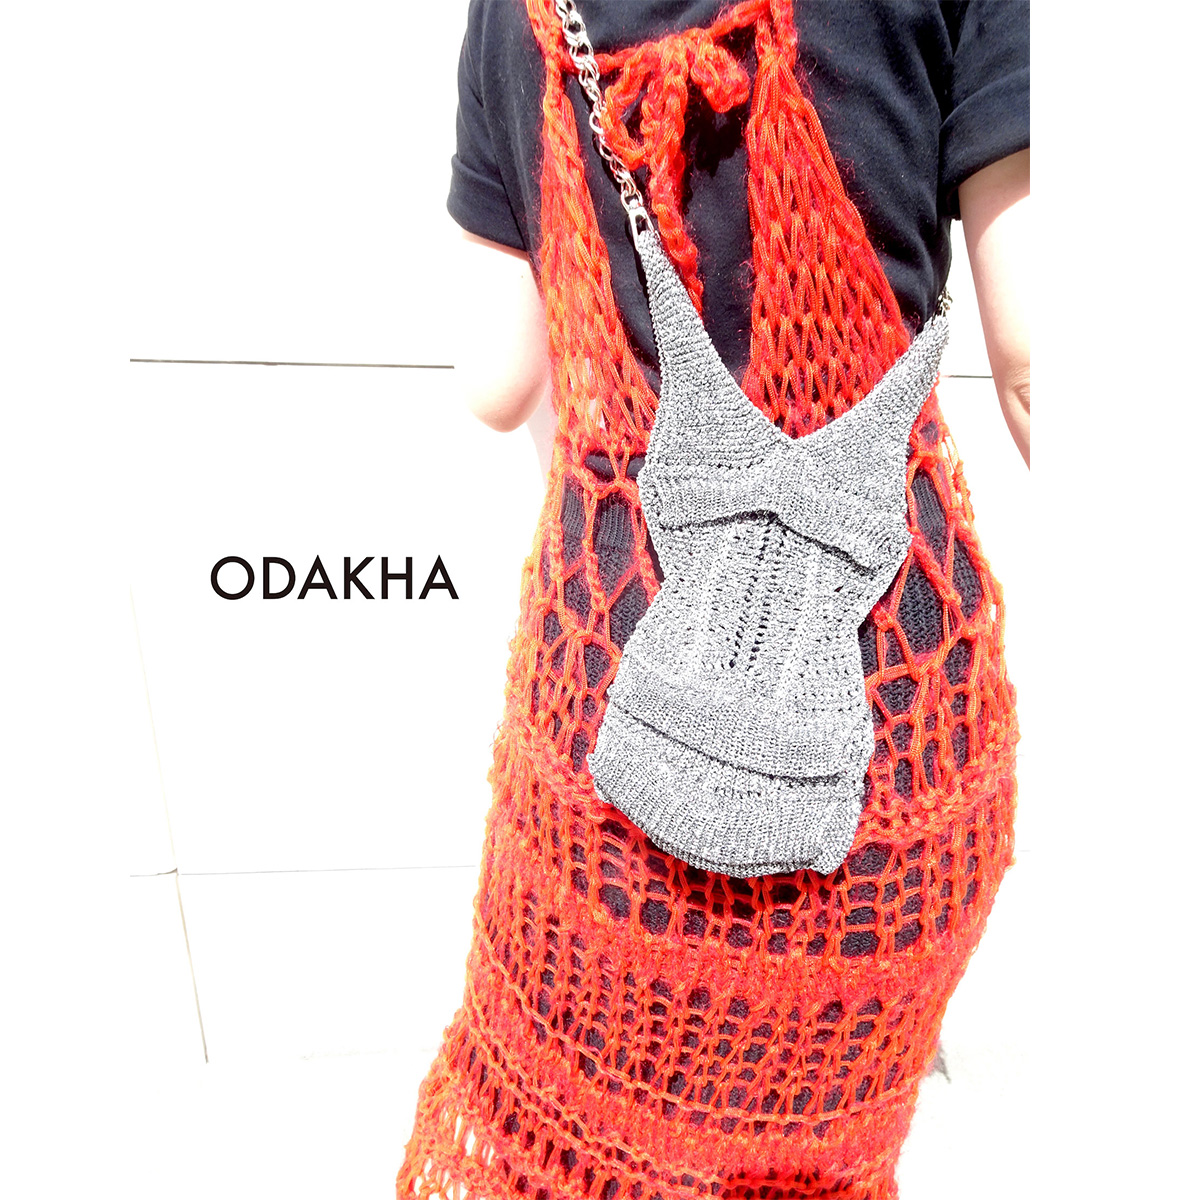 ODAKHA（オダカ）が伊勢丹新宿店にてポップアップイベントを開催中！